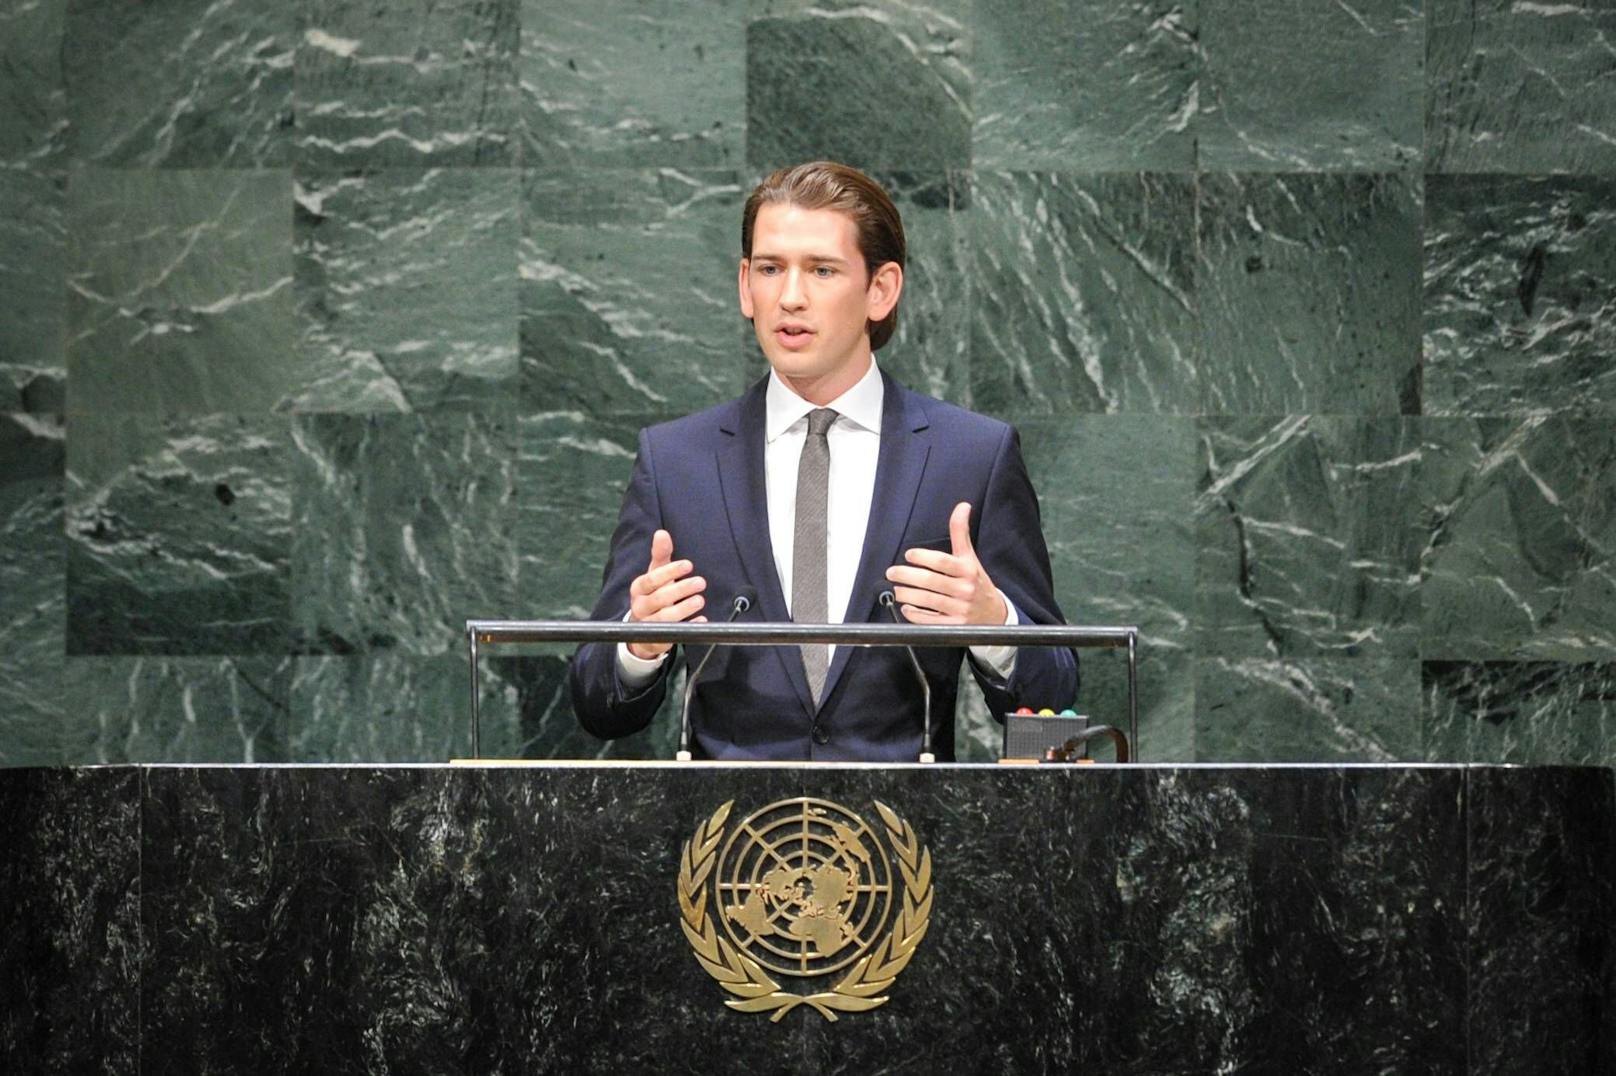 ...am 27. September 2014 eine Rede vor der Generalversammlung der Vereinten Nationen in New York auf dem Programm.